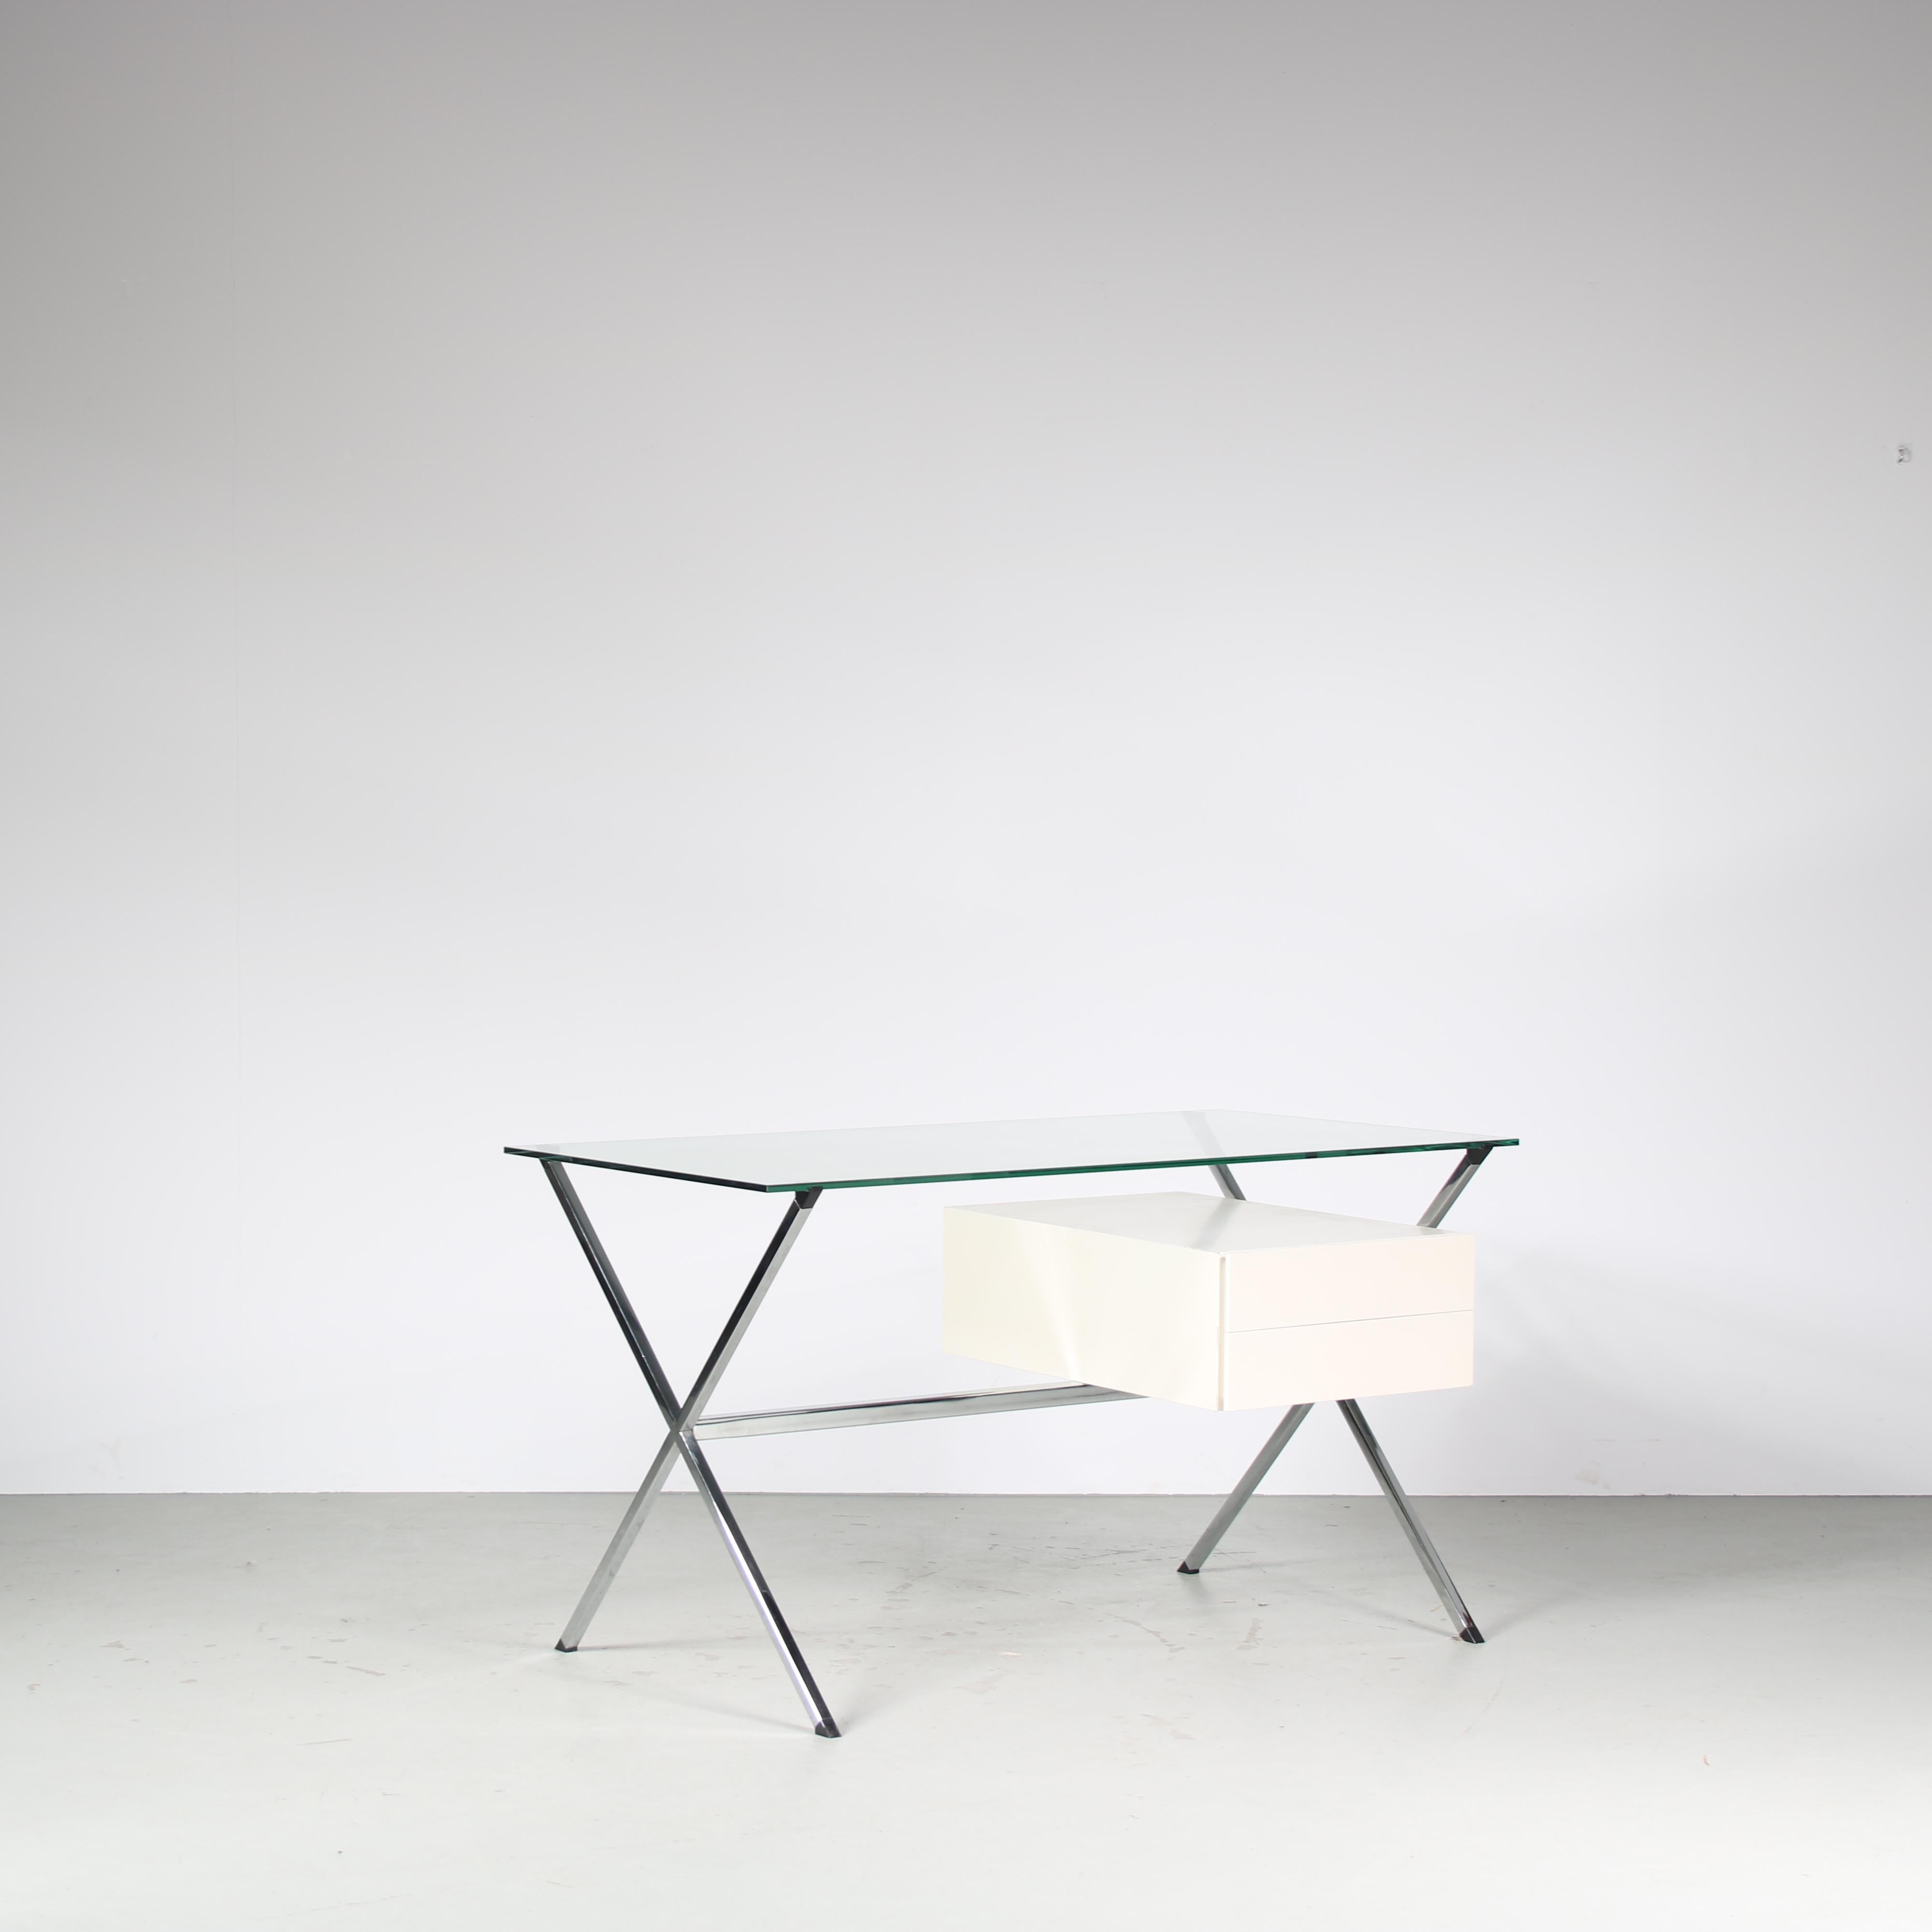 Ein wunderbarer Schreibtisch, entworfen von Franco Albini und hergestellt von Knoll International in den USA um 1960.

Das einzigartige Gestell des Tisches hat verchromte, gekreuzte Beine auf jeder Seite mit einer Stützstange dazwischen. Elegant und